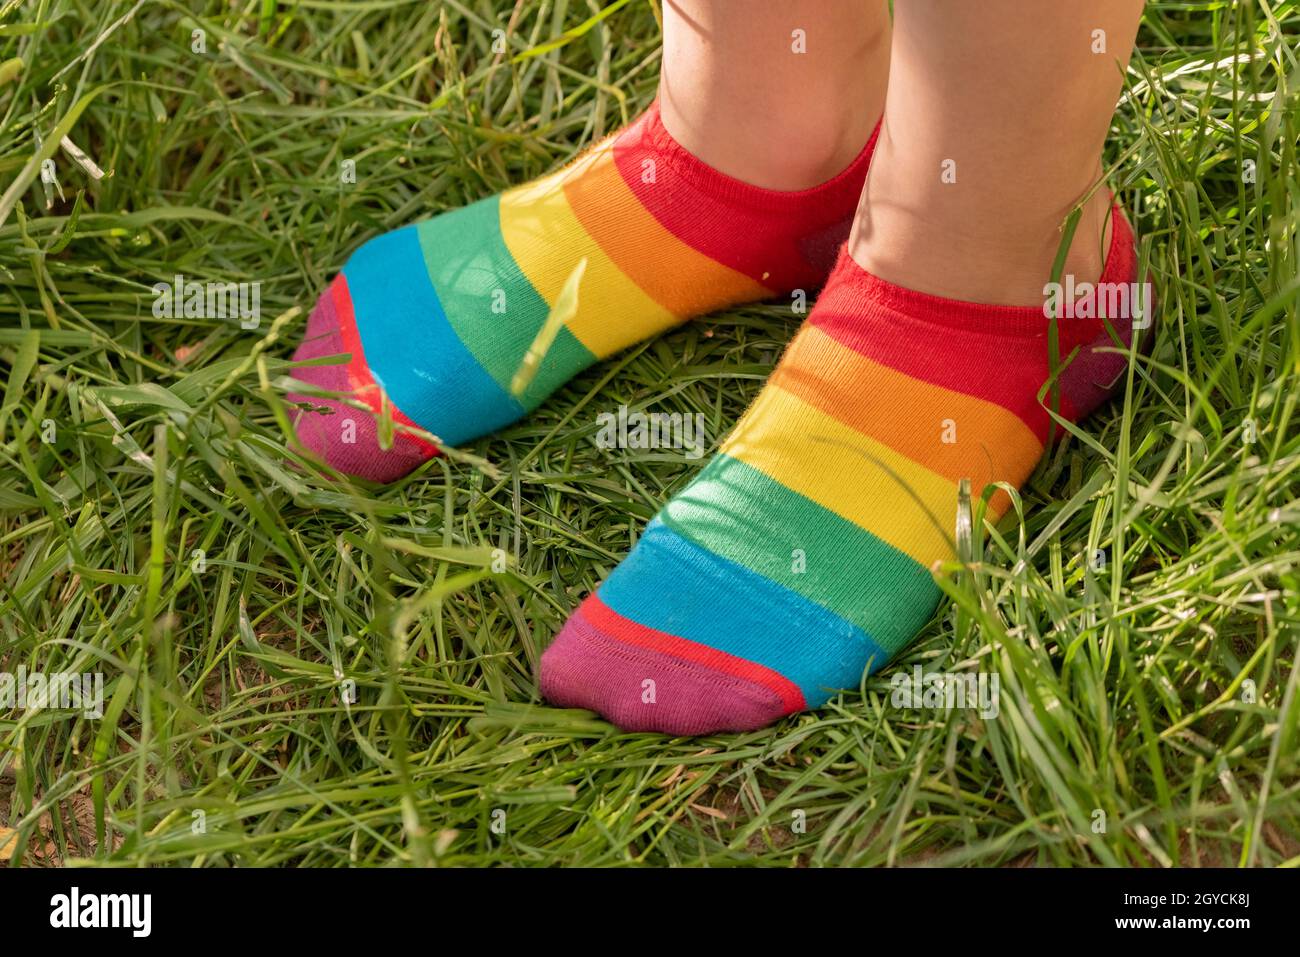 Regenbogensocken auf den Füßen des Mädchens. Kinderfüße in bunten Socken auf dem grünen Gras. Stockfoto